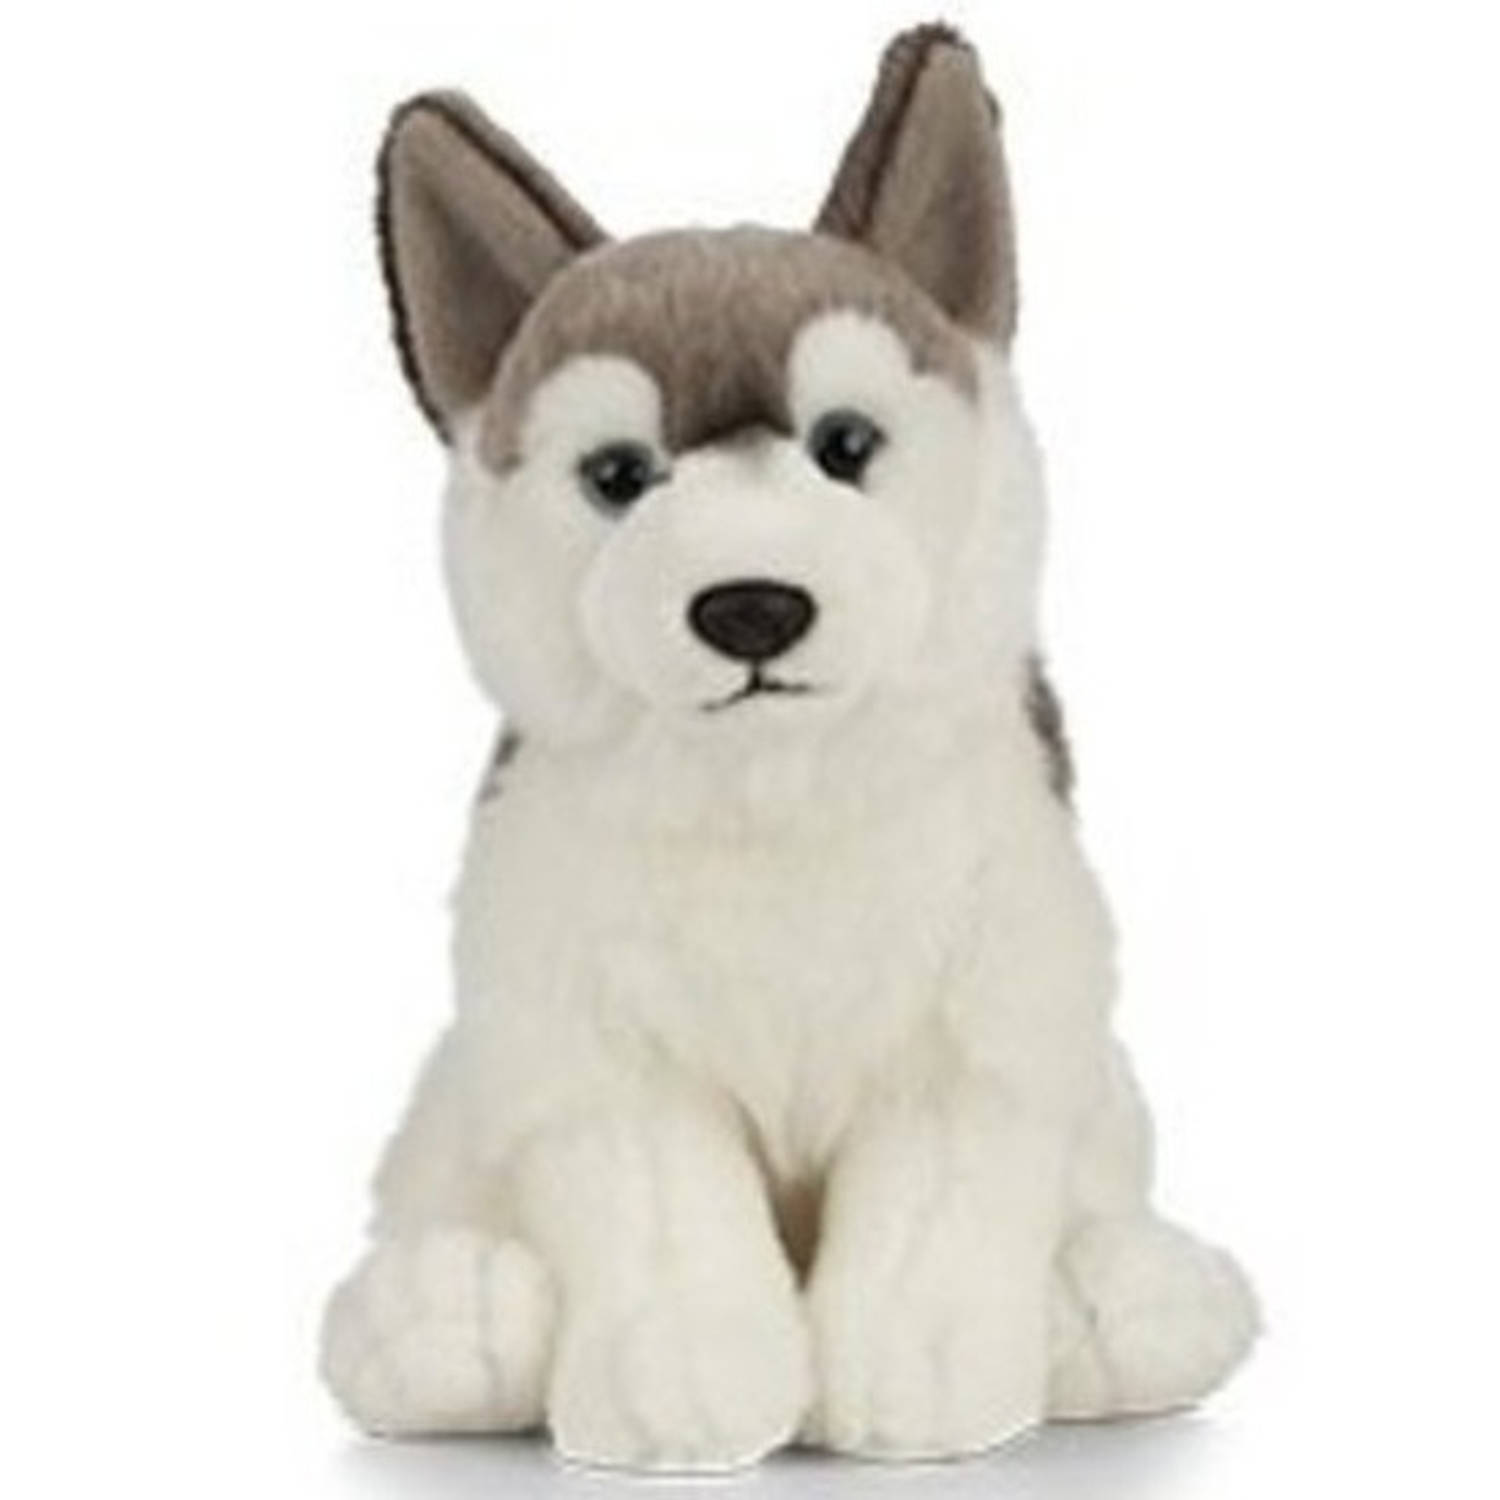 Pluche grijs-witte Husky hond knuffel 25 cm -Honden huisdieren knuffels Speelgoed voor kinderen